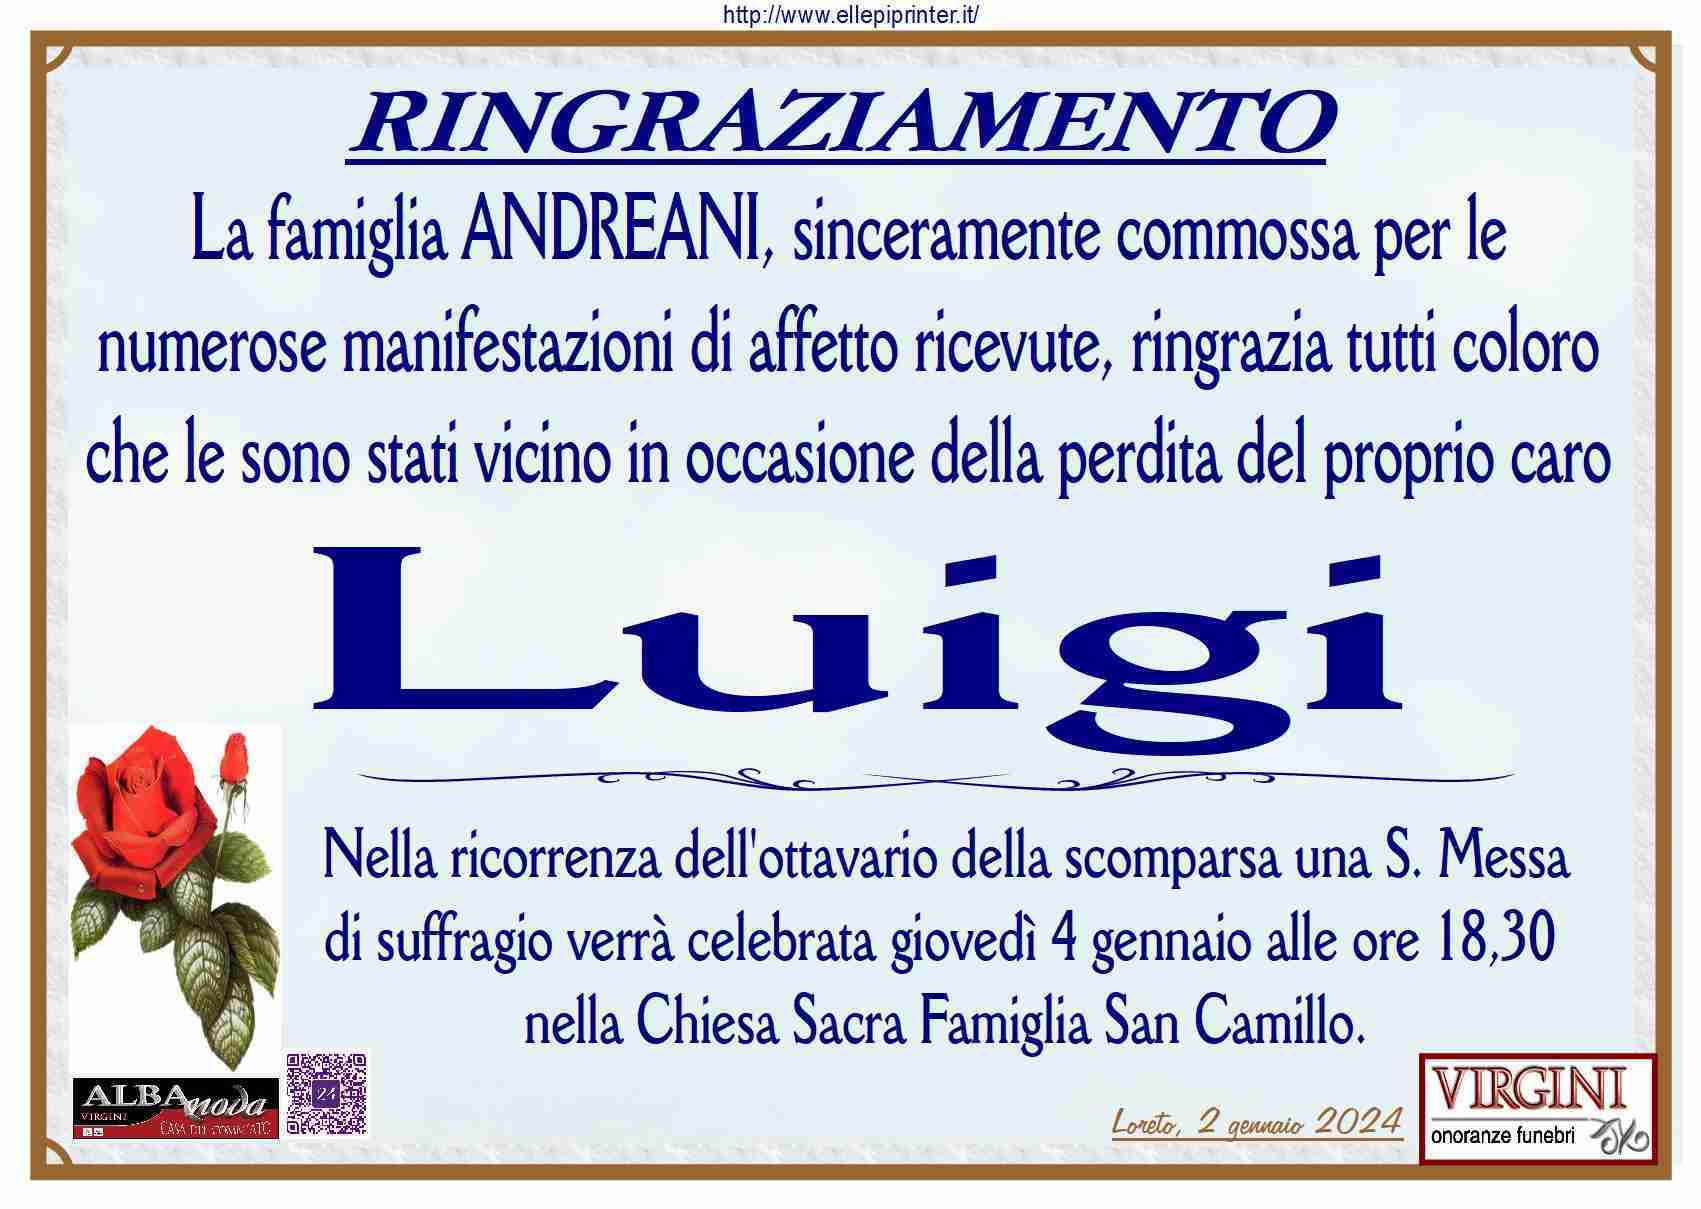 Luigi Andreani